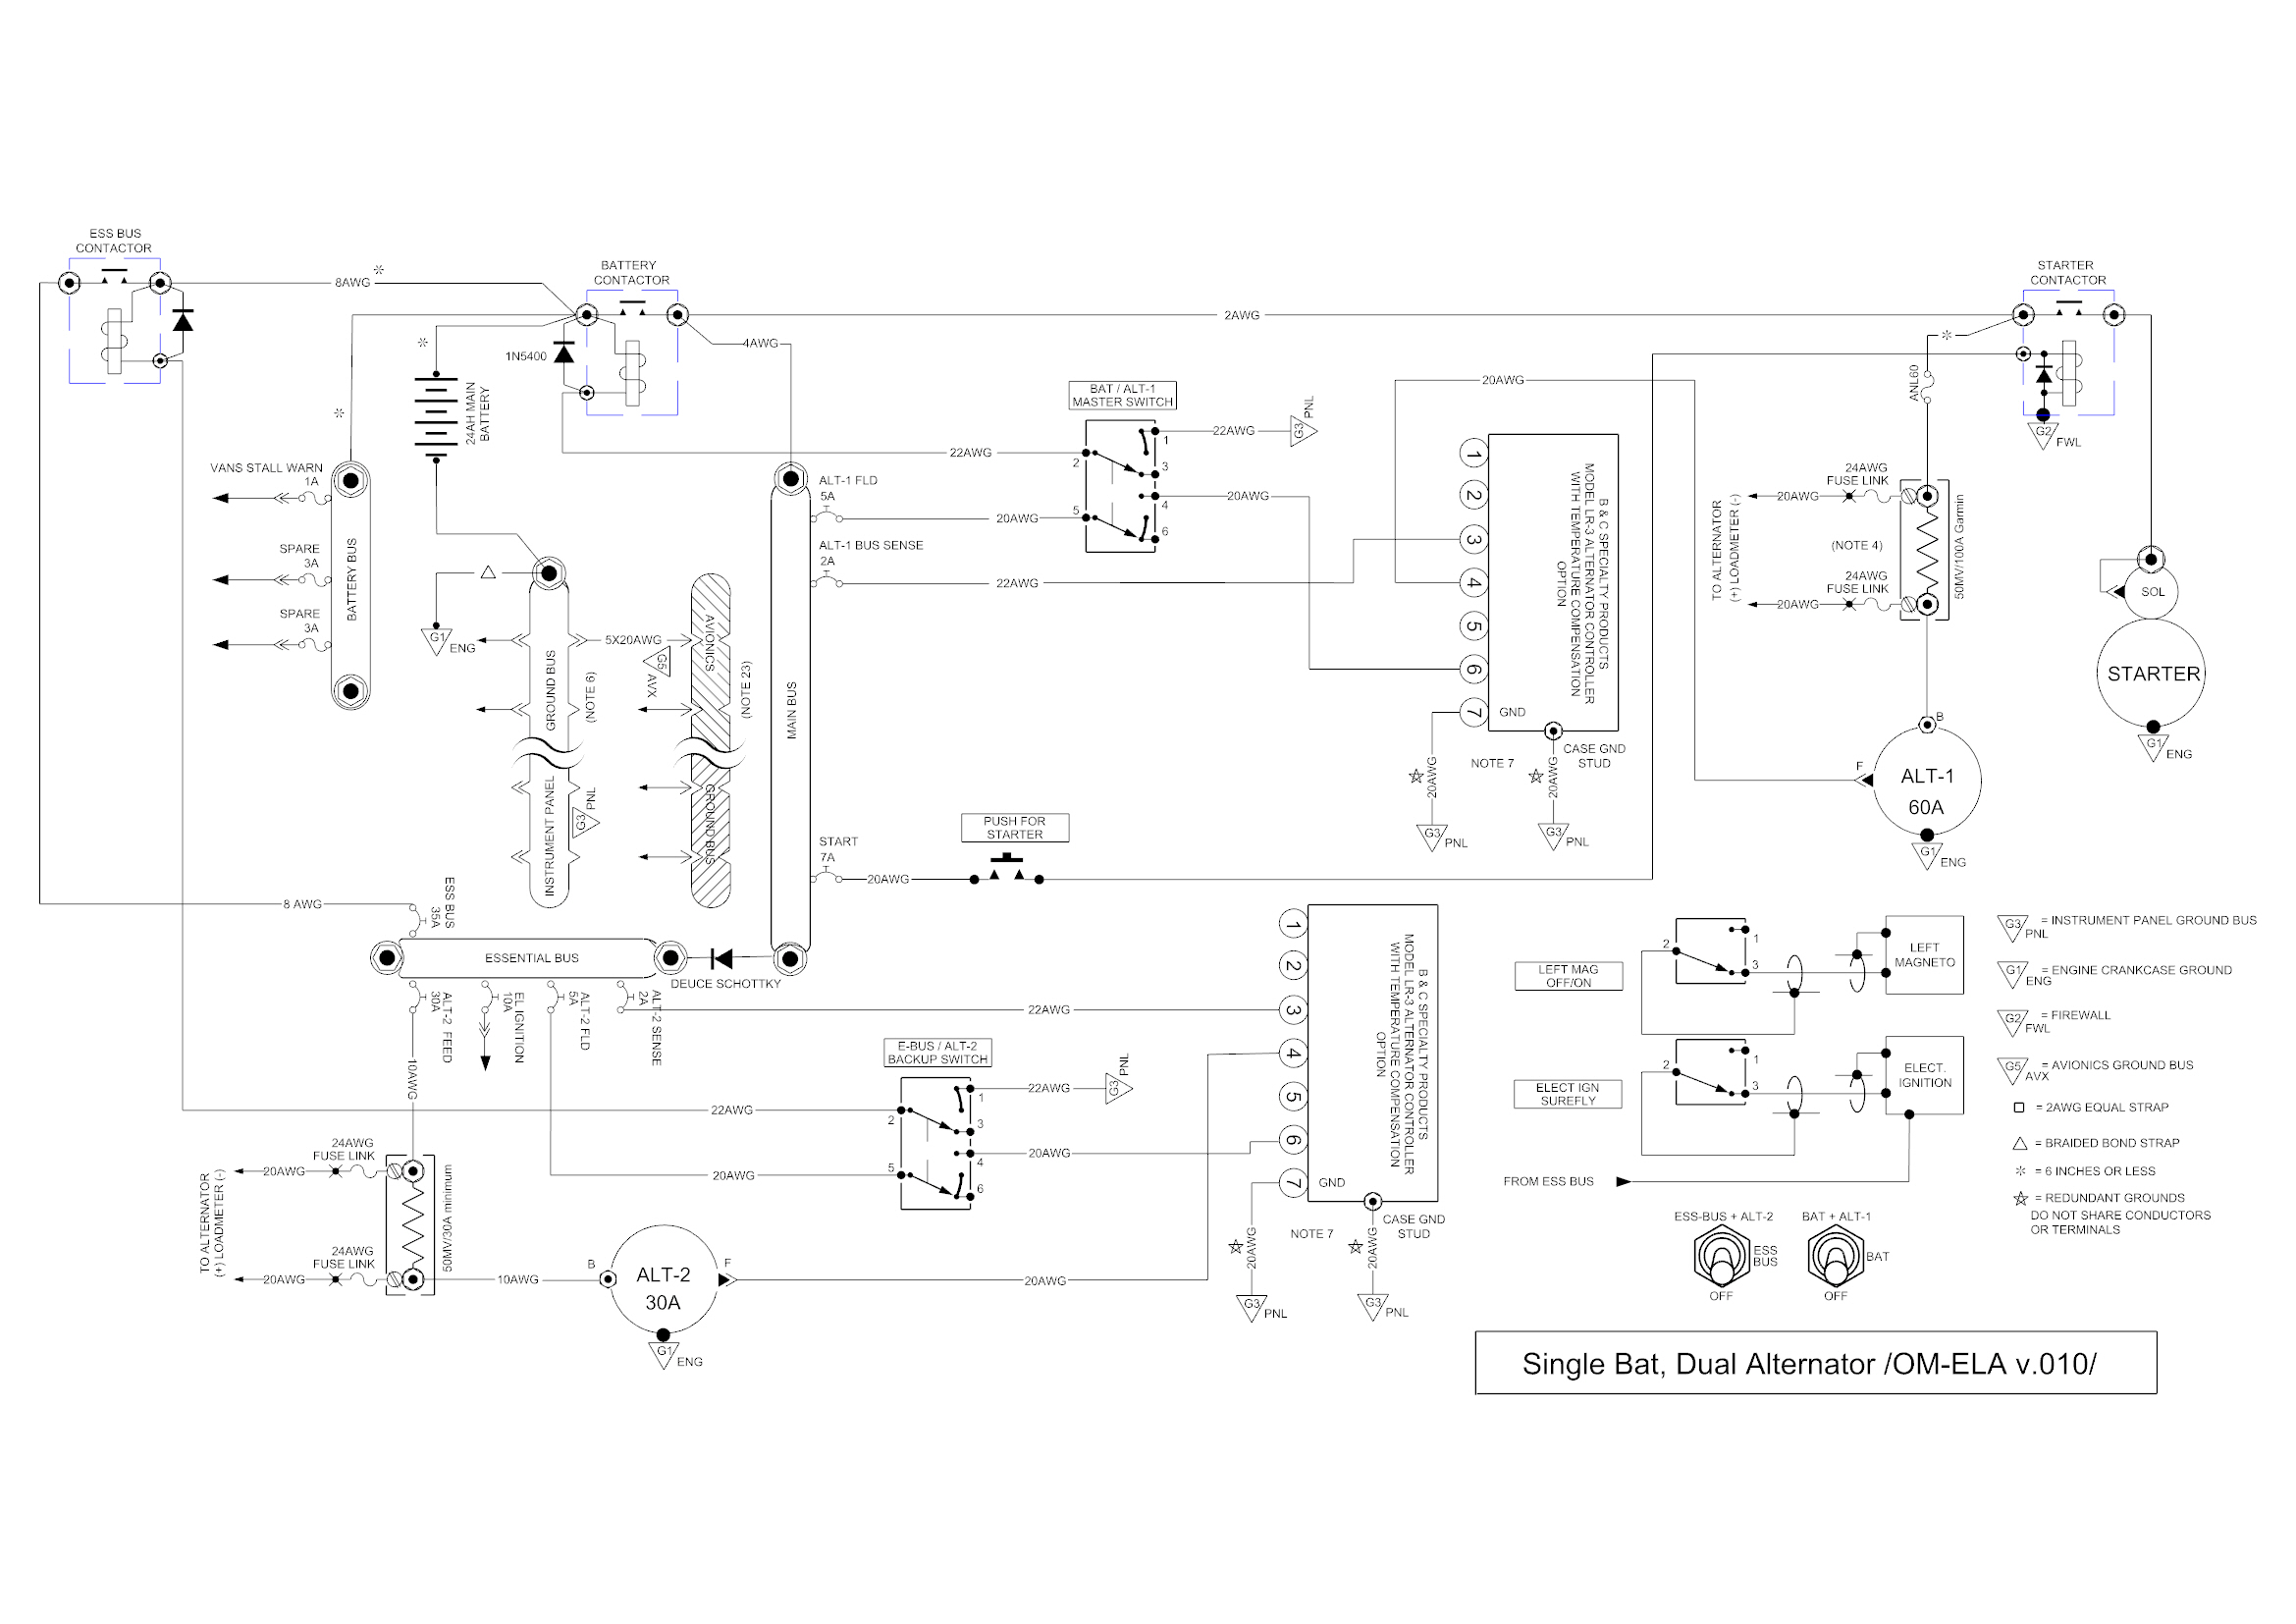 OM-ELA Basic Elec Diagram v.010 E BUS Relay replaced.jpg